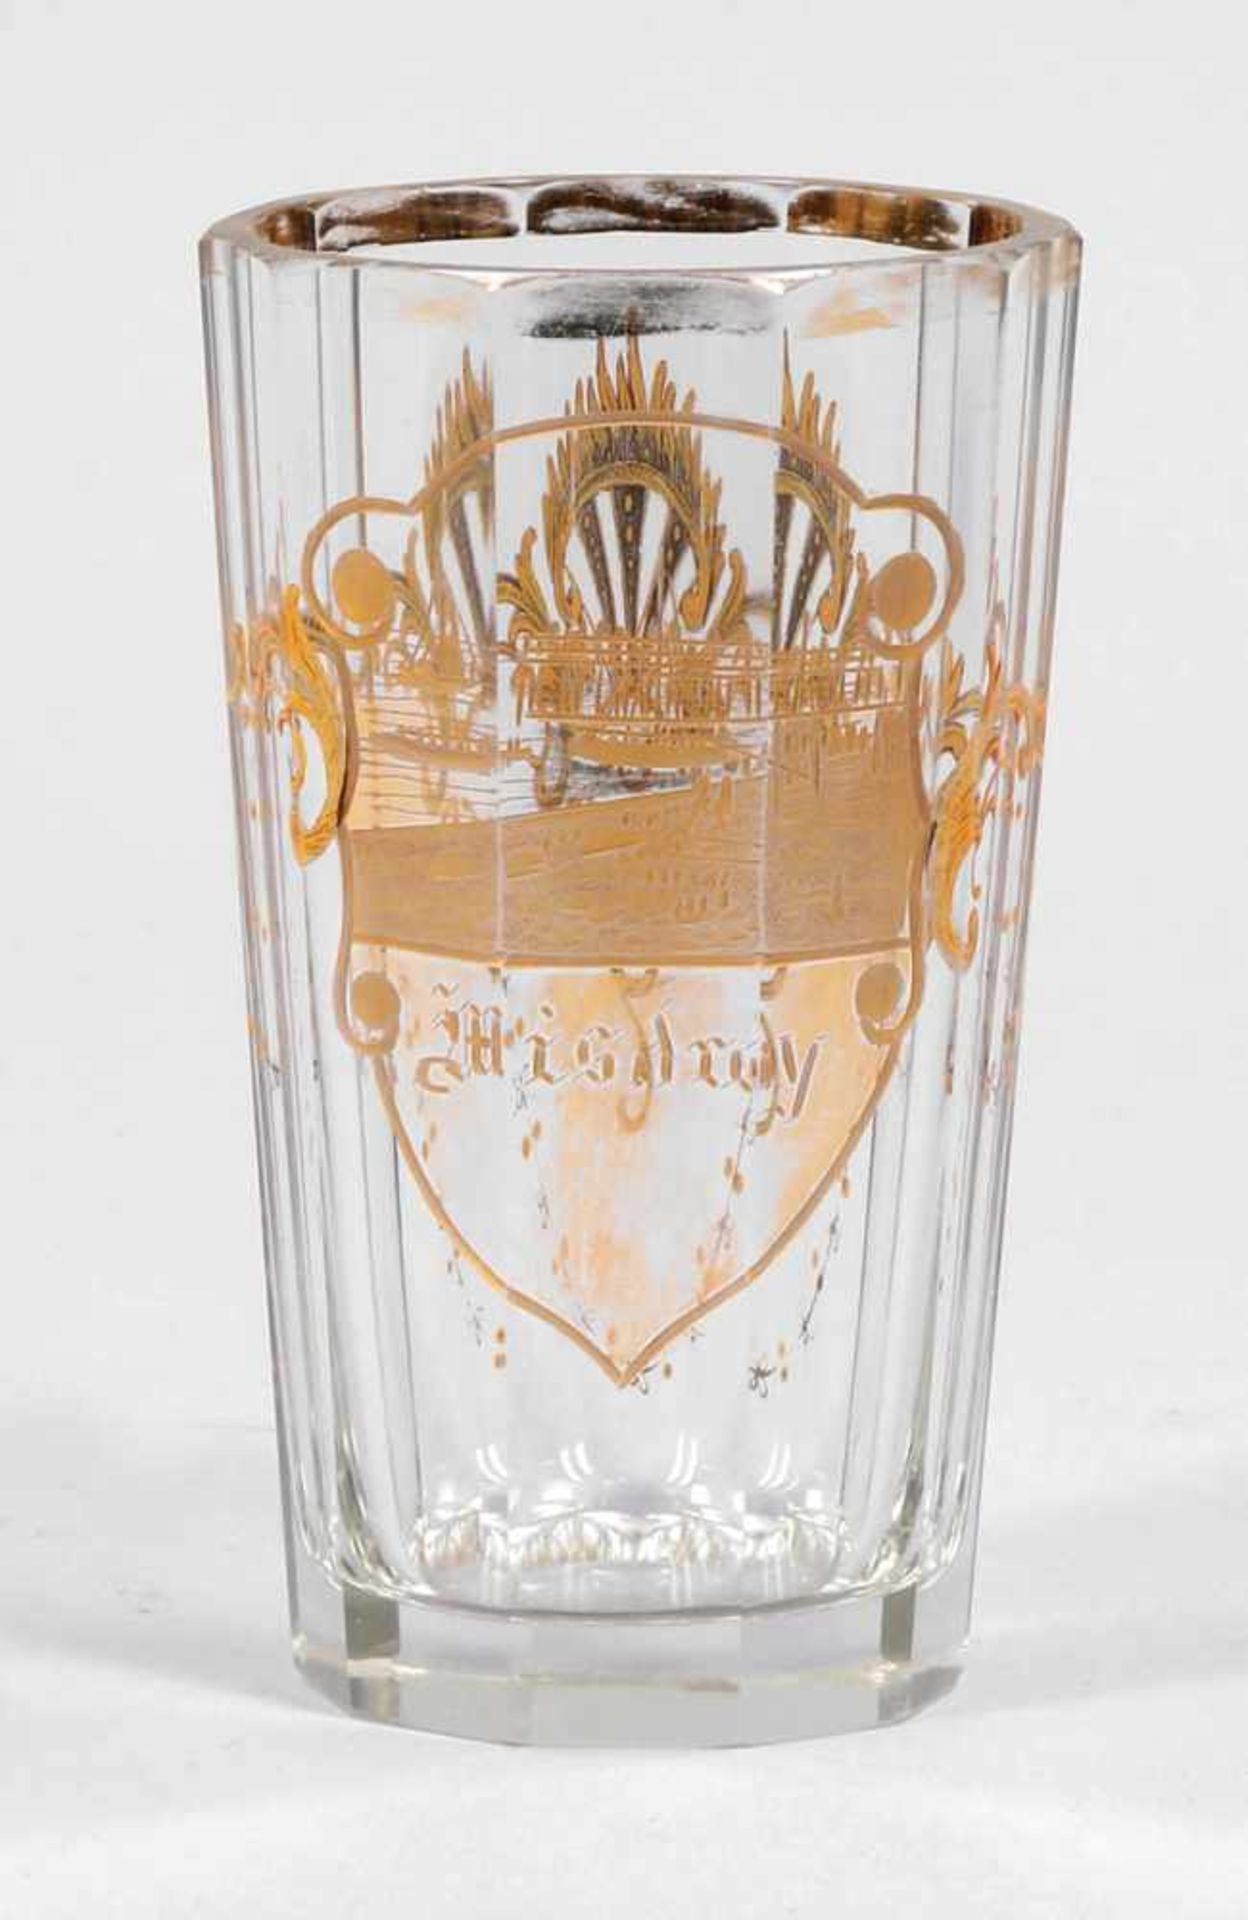 Facettiertes Badeglas Miedzyzdroje (deutsch Misdroy)Um 1880. Farbloses Glas, Geschliffen, Gold